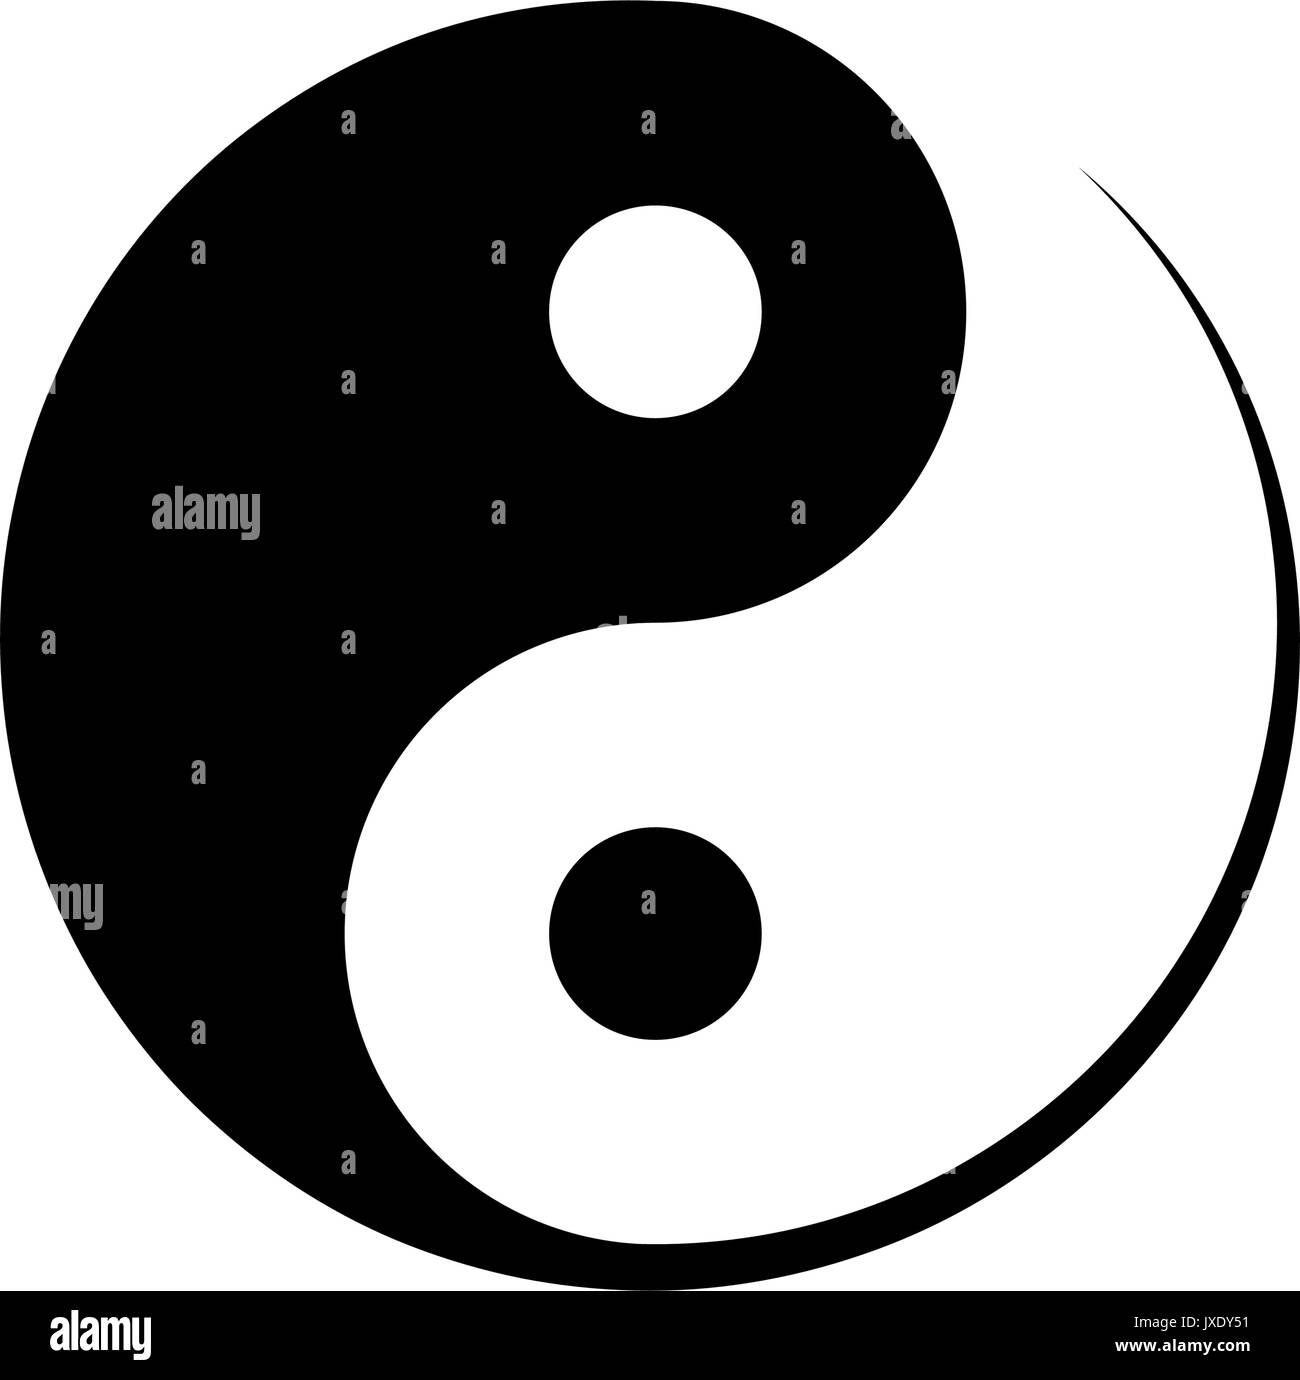 Bianco e nero Yin Yang simbolo simboleggia l'armonia, unità, equilibrio, maschio e femmina, positivo e negativo nella filosofia cinese, illustrazione vettoriale Illustrazione Vettoriale